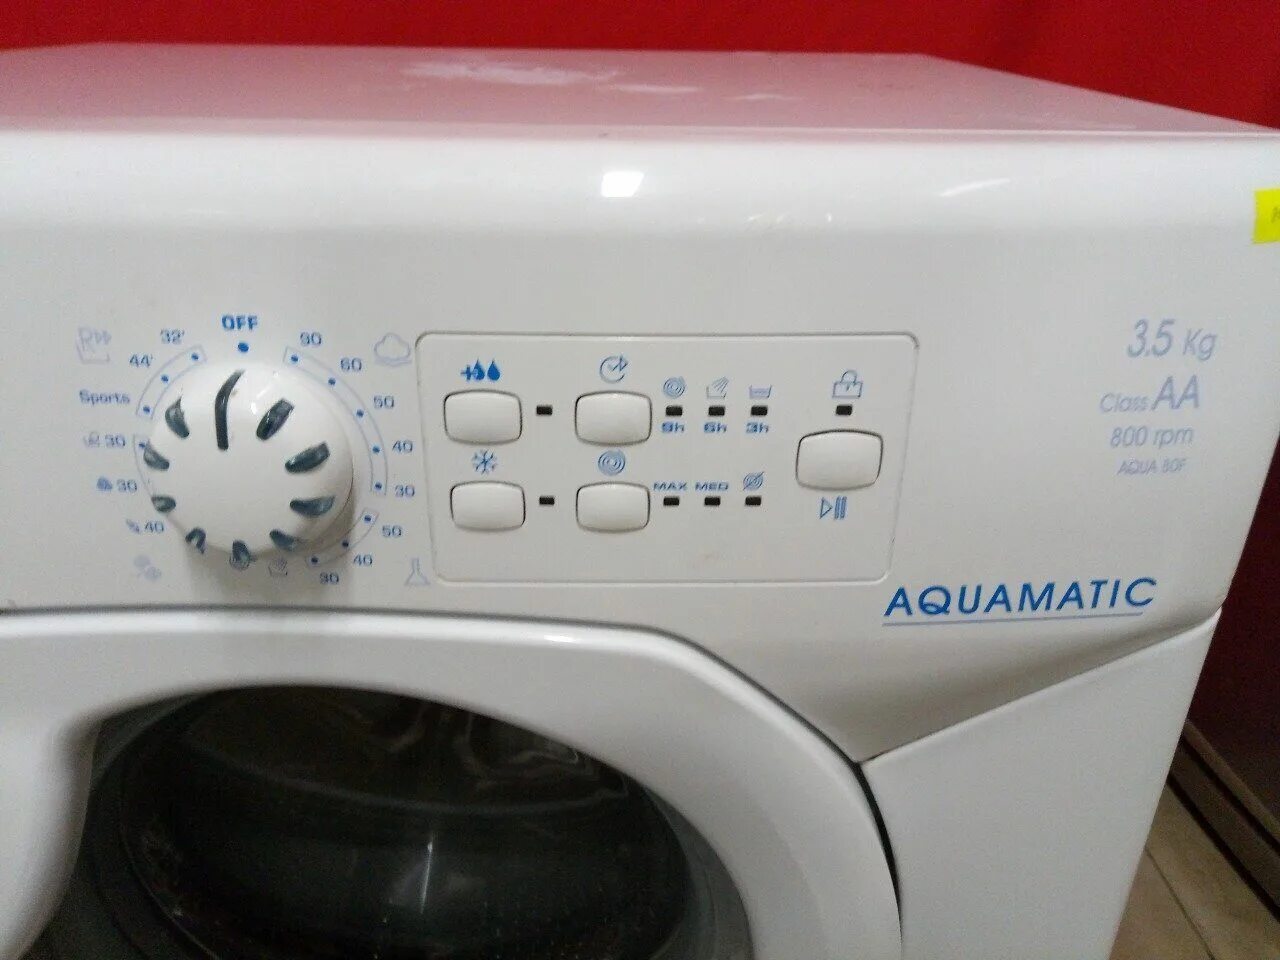 Канди акваматик 80f. Candy Aqua 80f. Aquamatic Aqua 80f стиральная машина. Стиральная машина Candy Aquamatic 80 f.